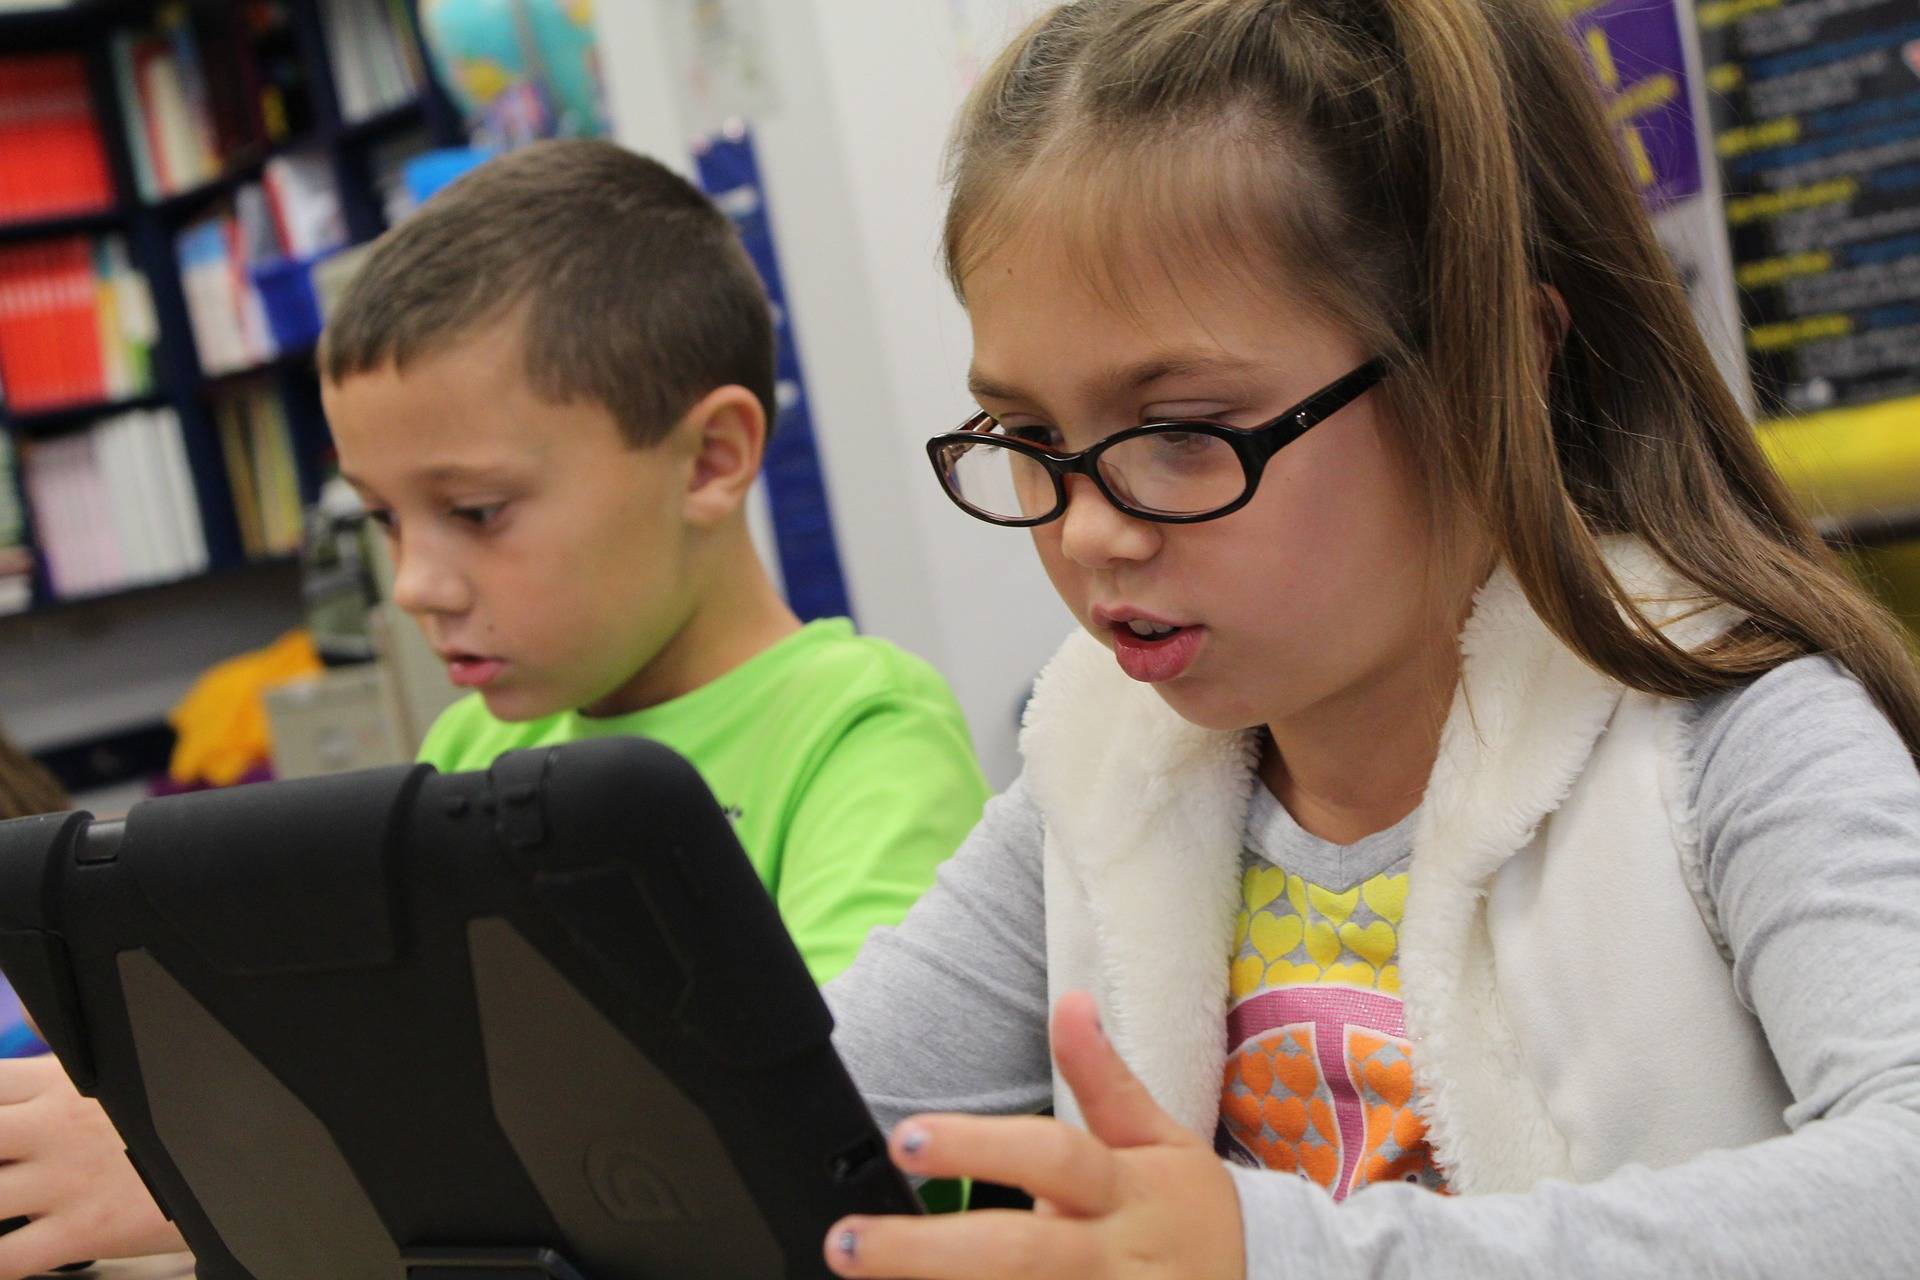  Digitales Lernen wird jetzt zusätzlich gefördert, unter anderem mit Mitteln für neue Schulcomputer.  